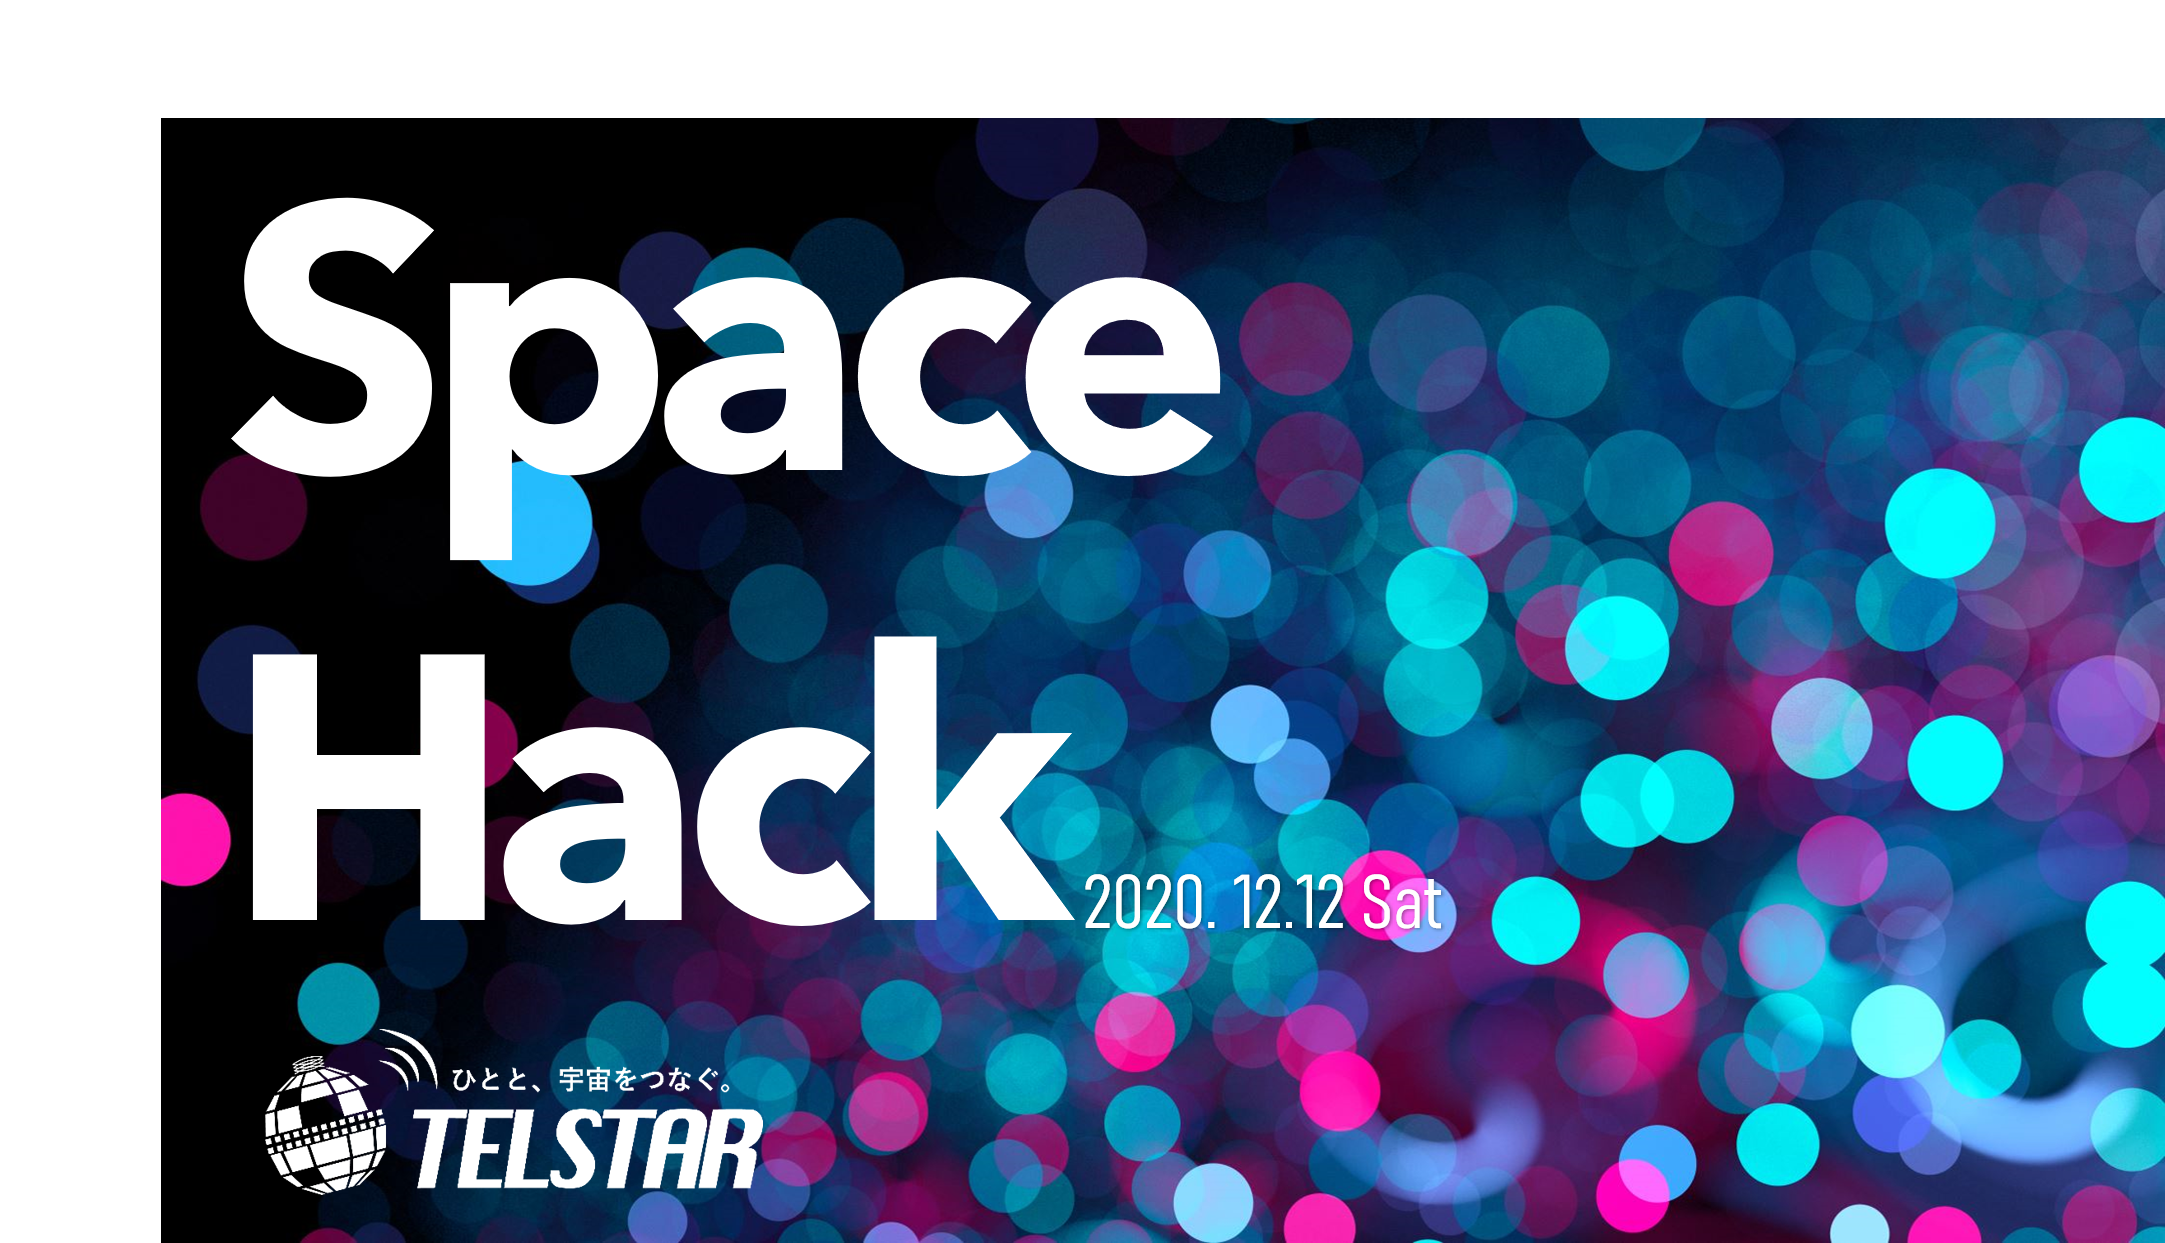 宇宙キャリアイベントSPACE HACK @Youtube 開催決定 【2020.12.12.Sat】